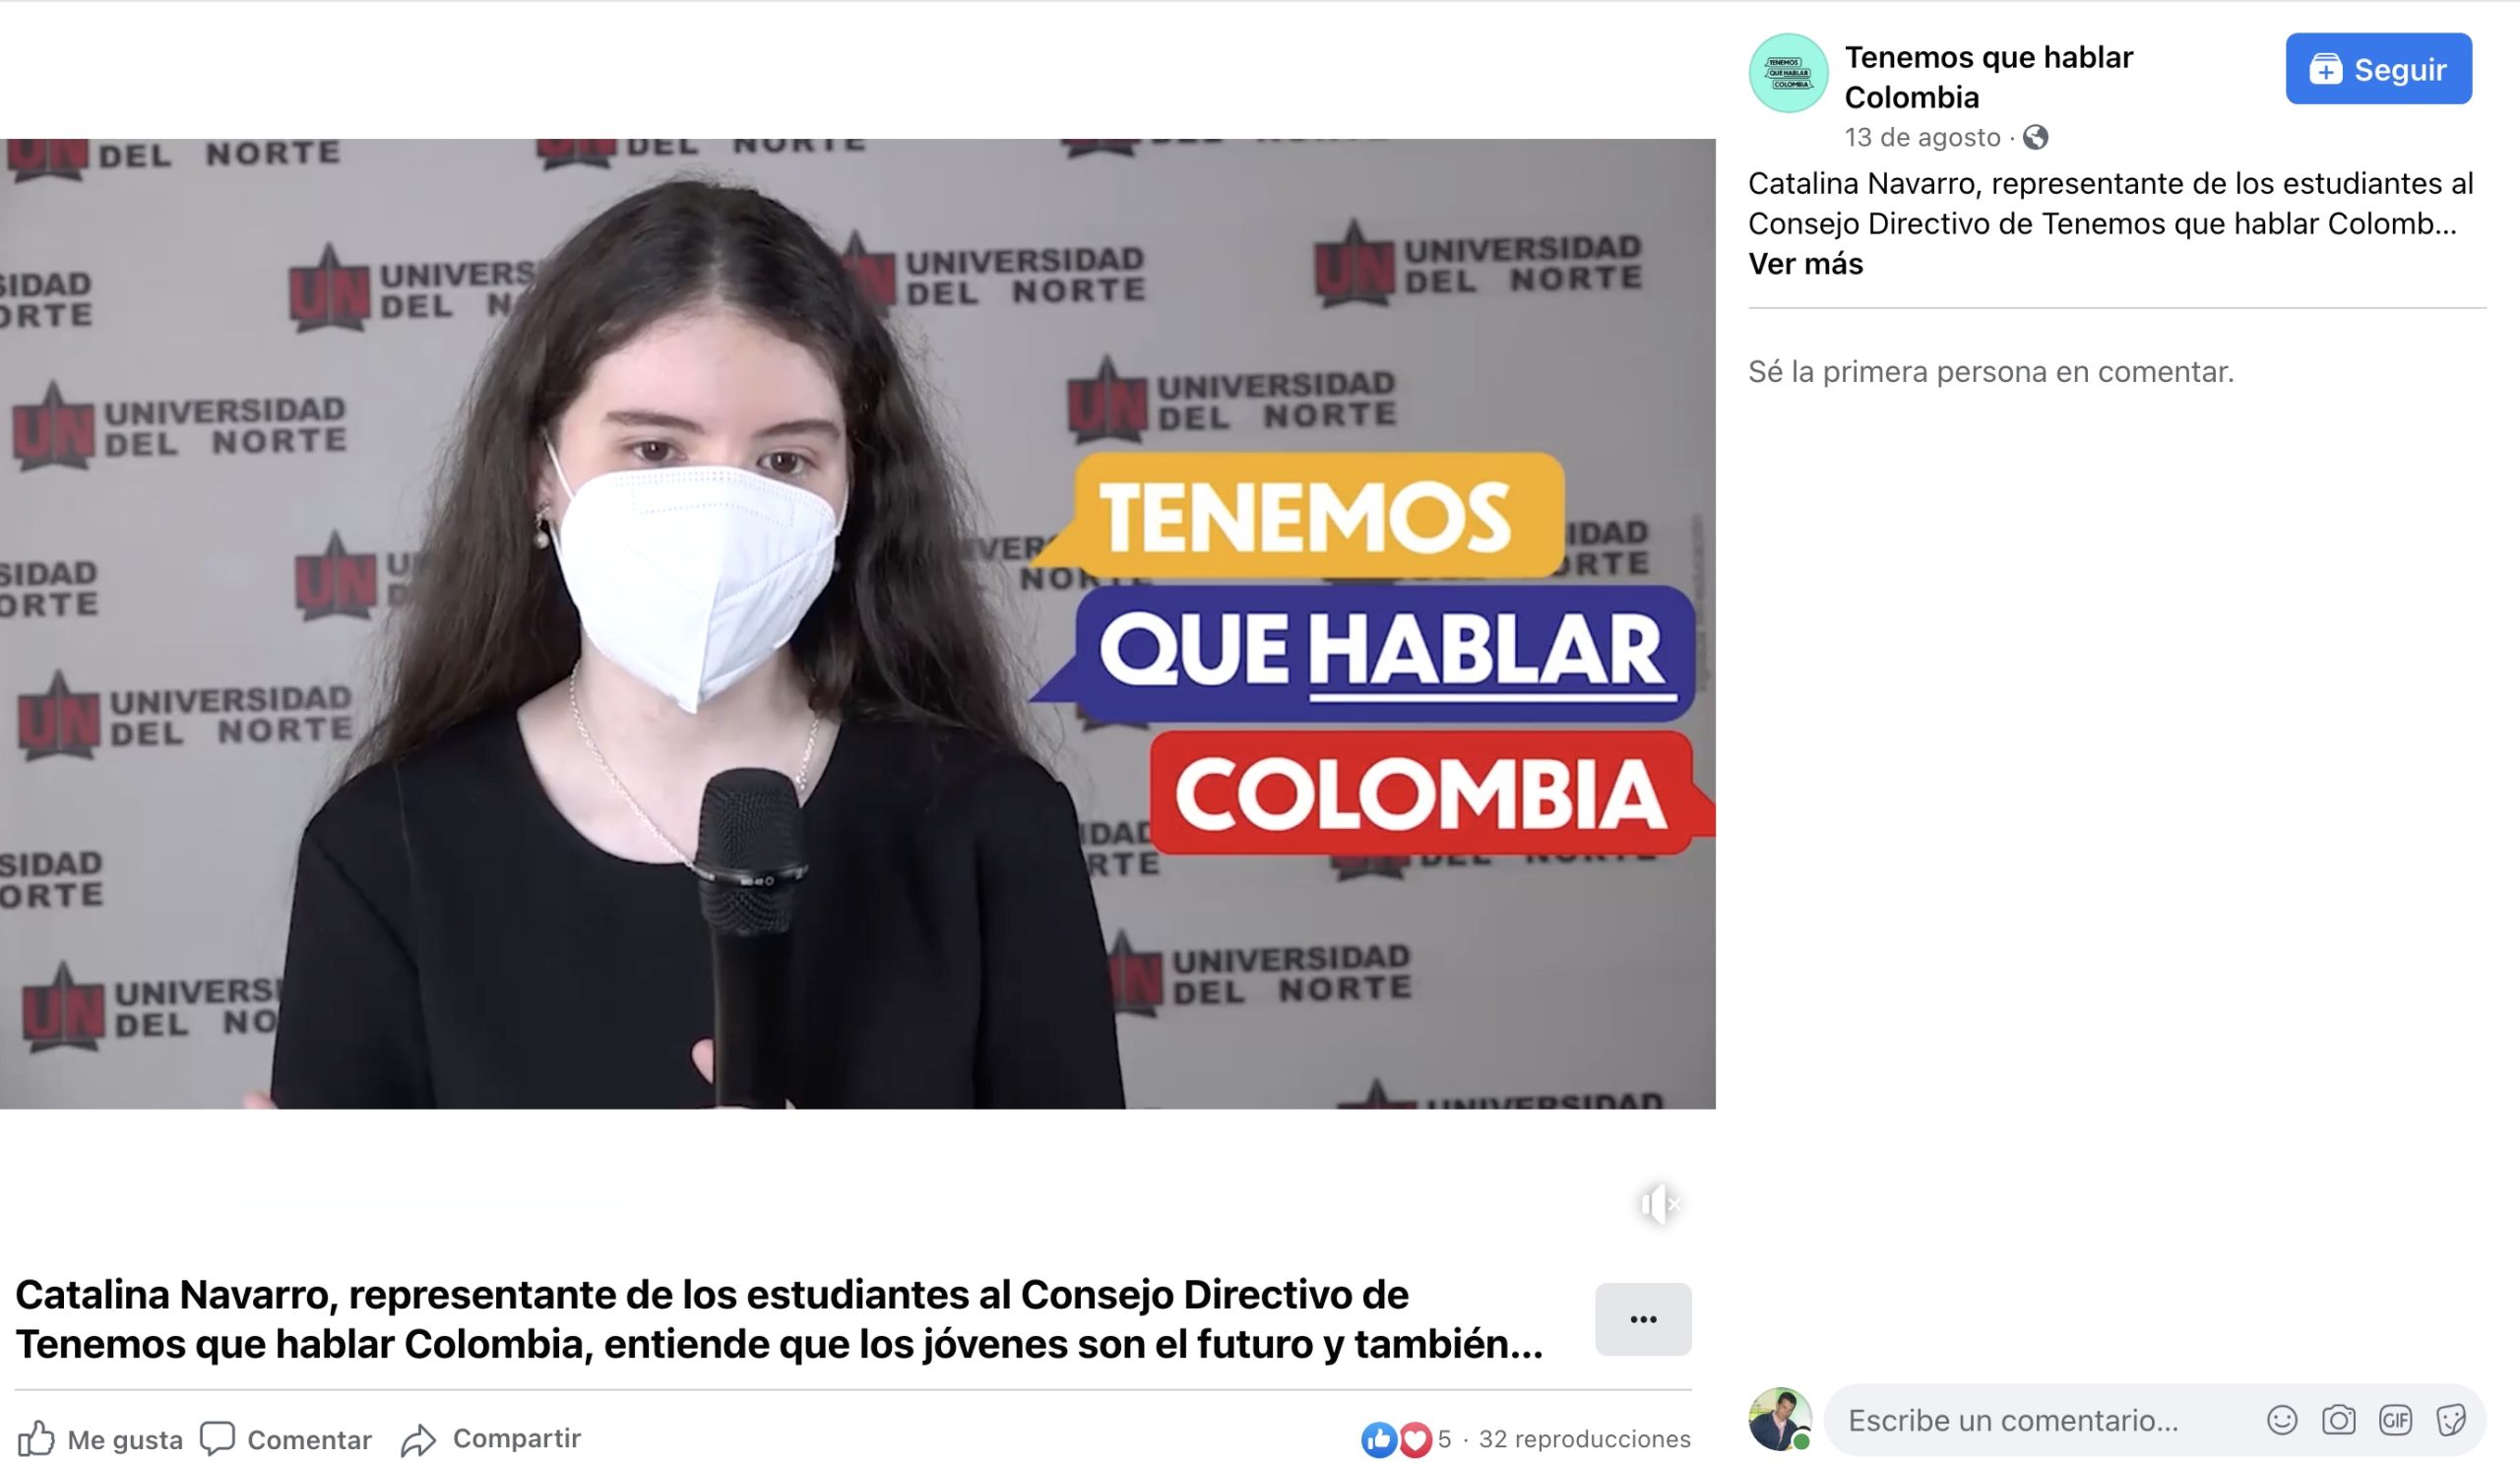 Catalina Navarro, representante de los estudiantes al Consejo Directivo de Tenemos que hablar Colombia